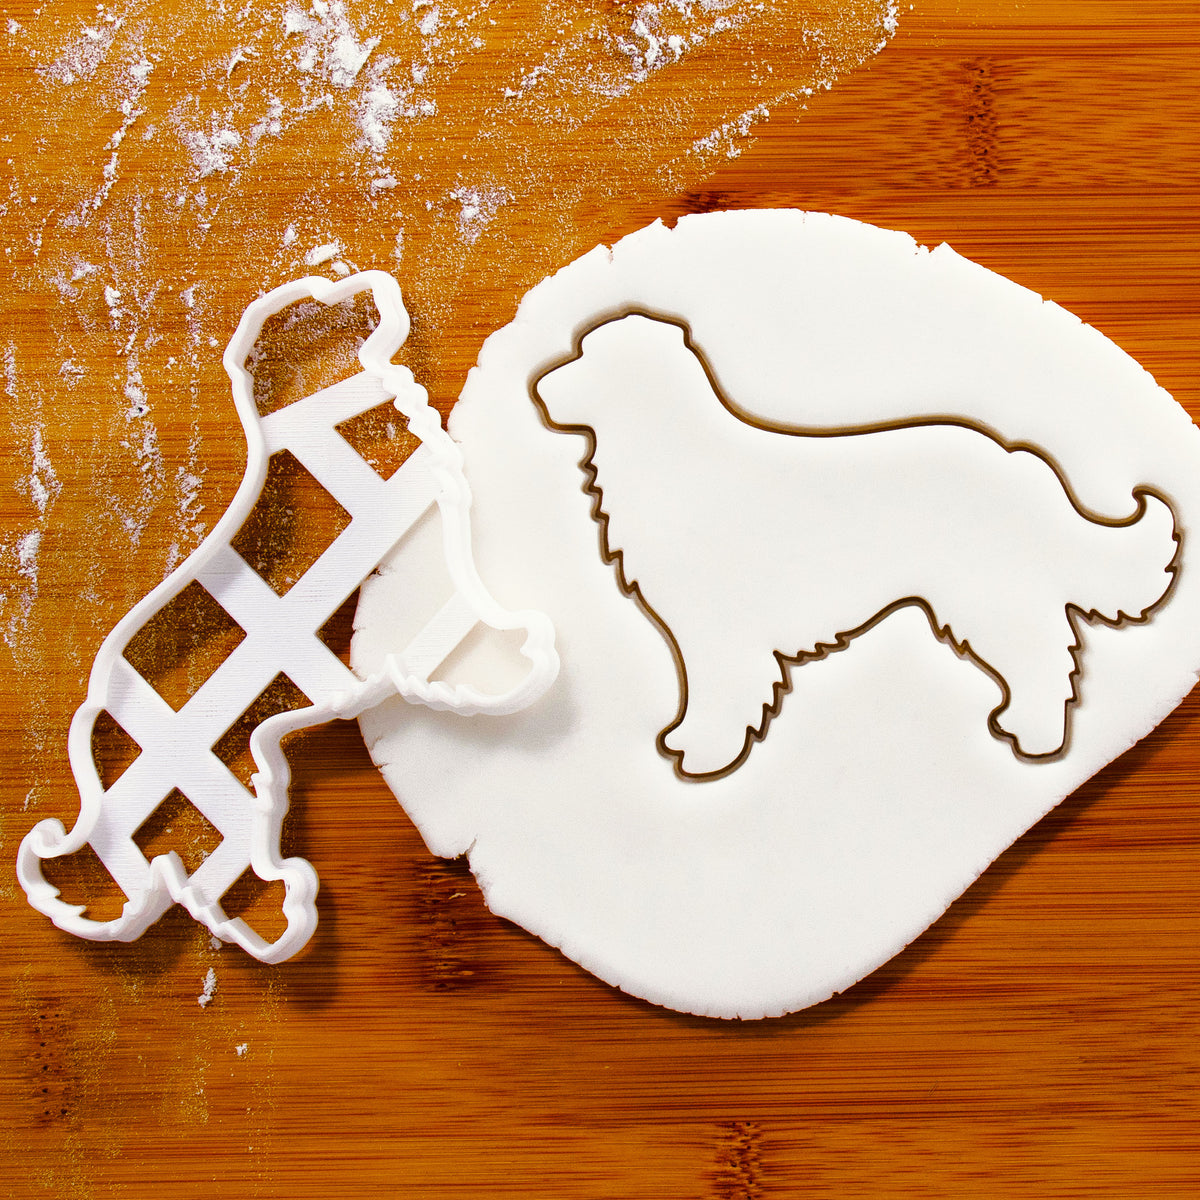 Australian Shepherd Body Cookie Cutter